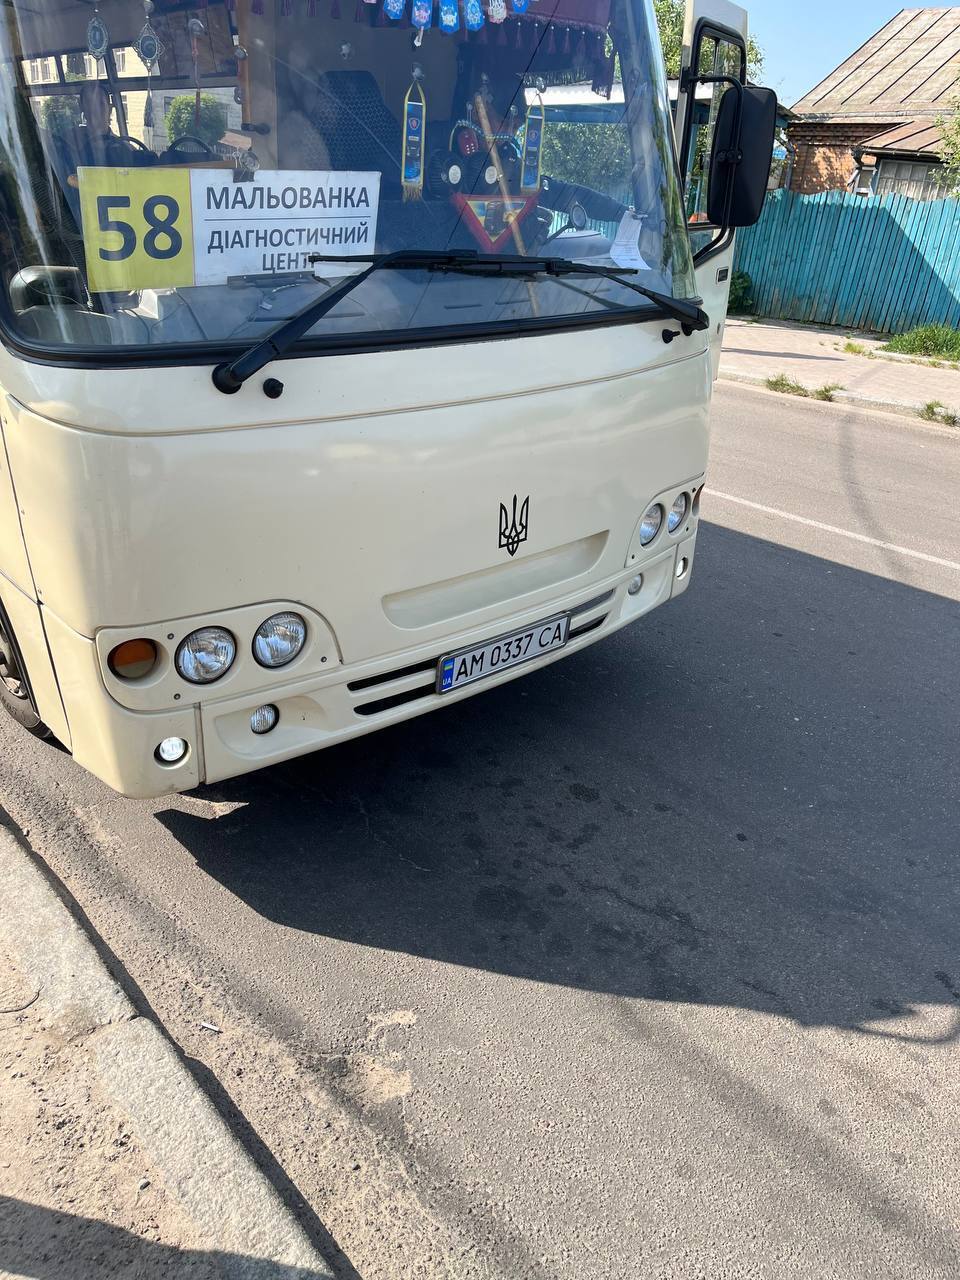 В Житомире в маршрутке разгорелся конфликт из-за отказа водителя бесплатно везти военного: пассажиры вступились